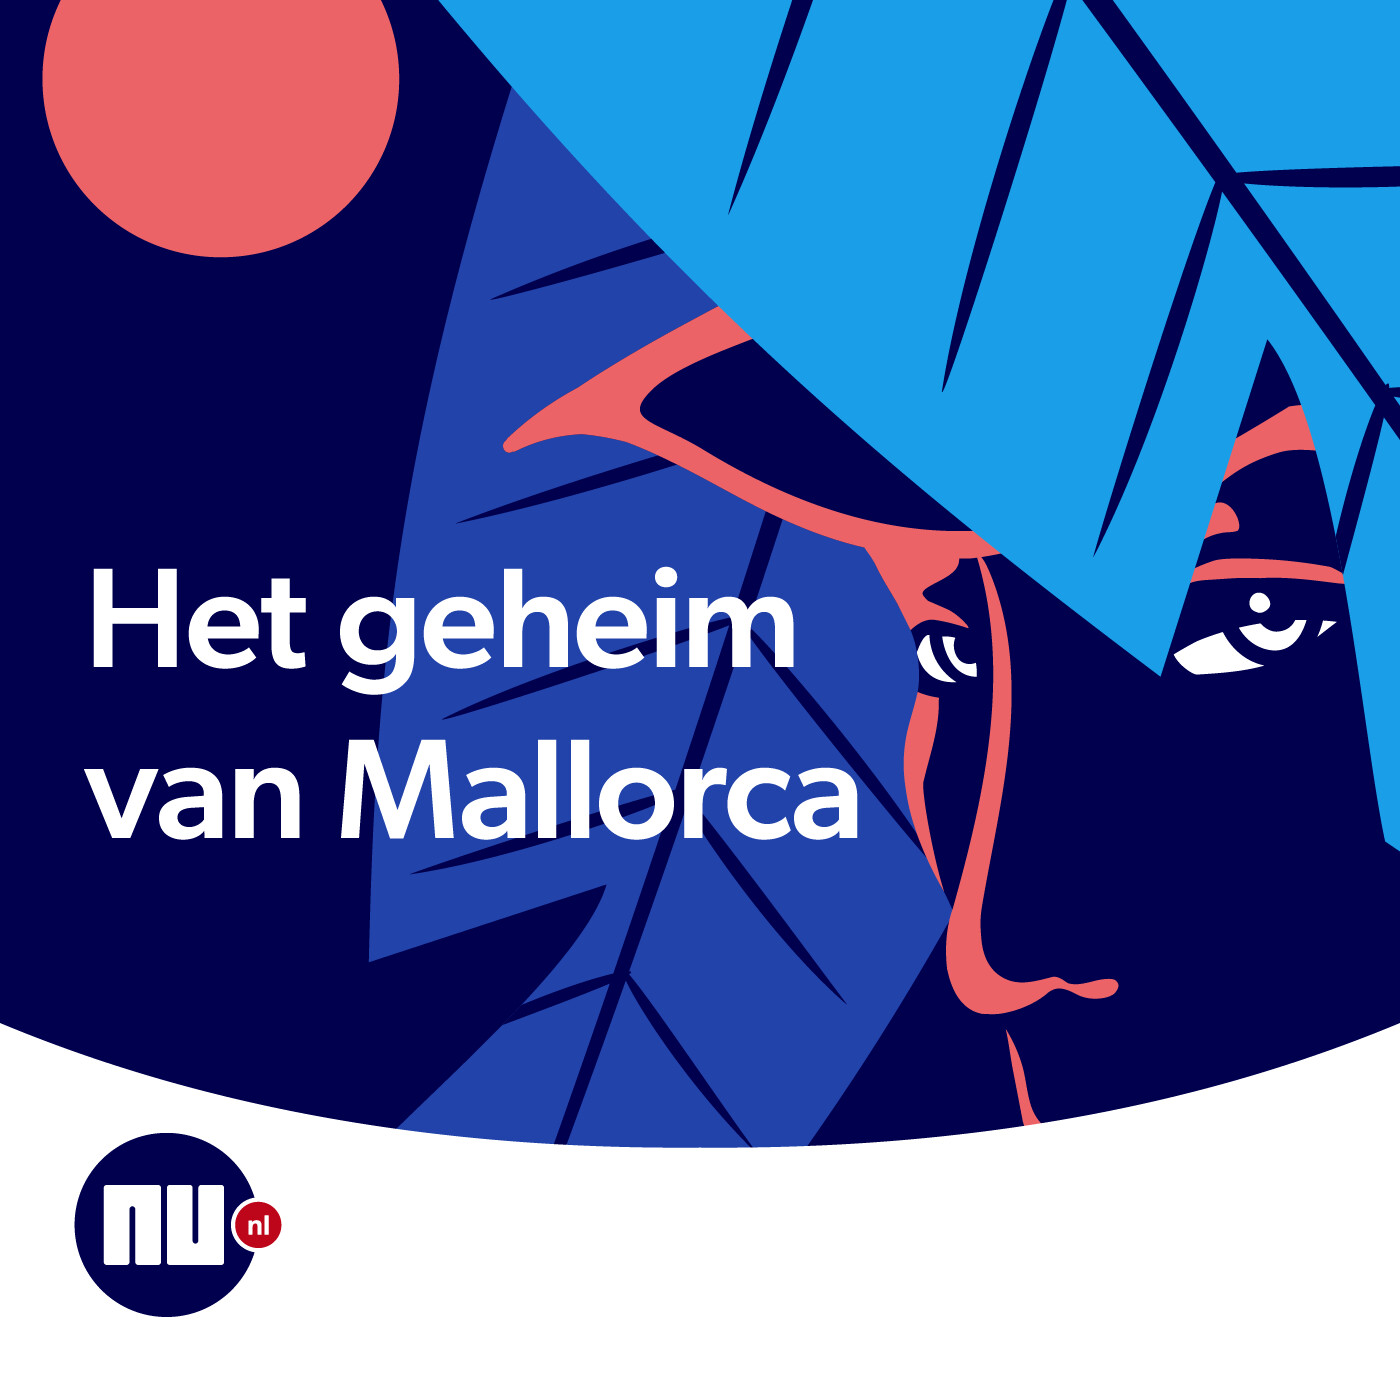 Het geheim van Mallorca logo